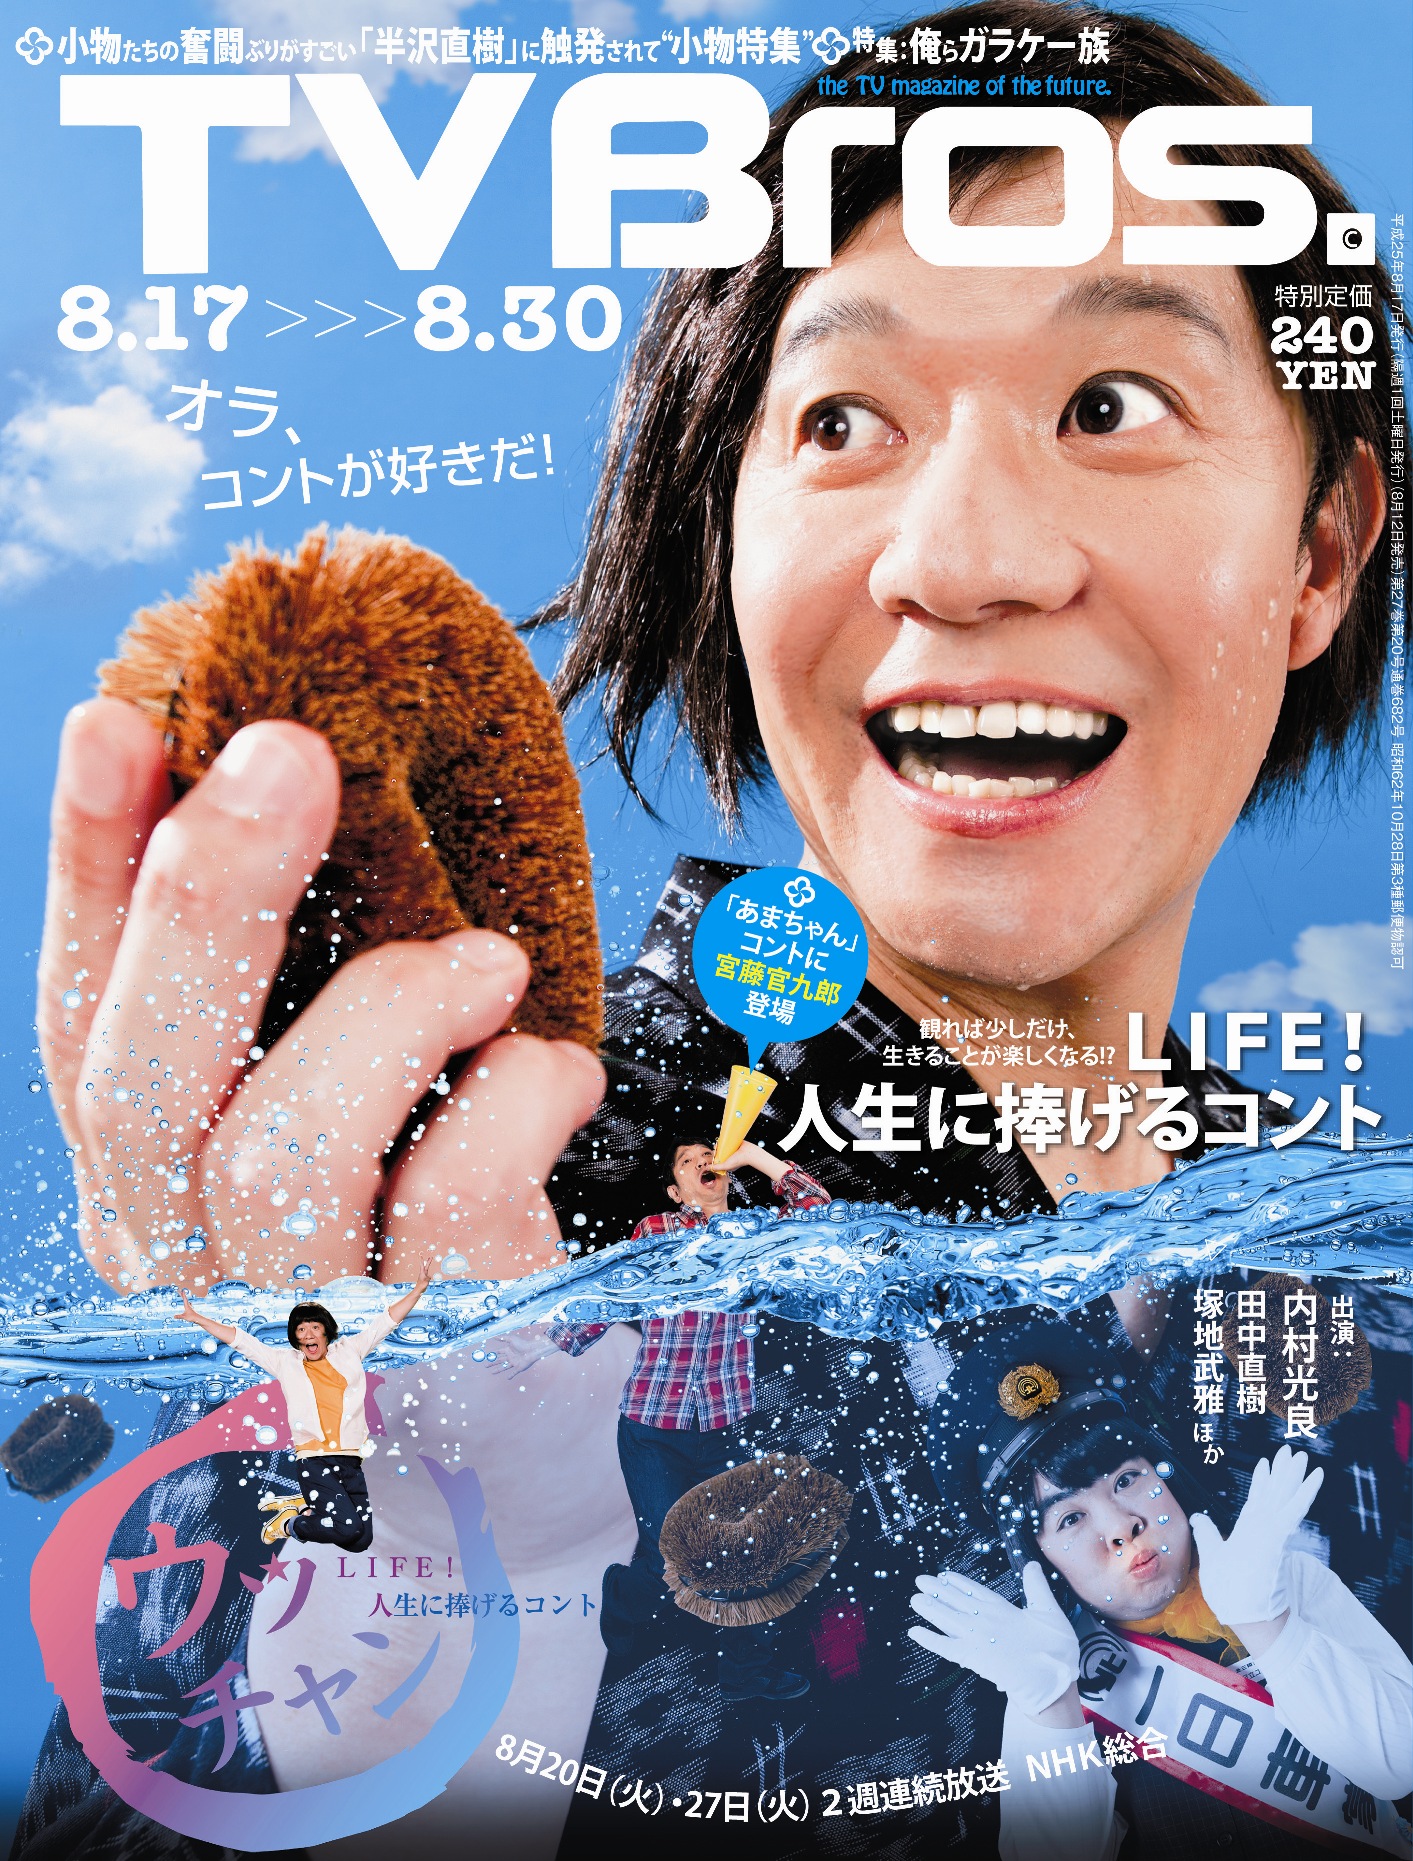 能年玲奈 2013年 NHK朝ドラ あまちゃん 放送局用大型ポスター-